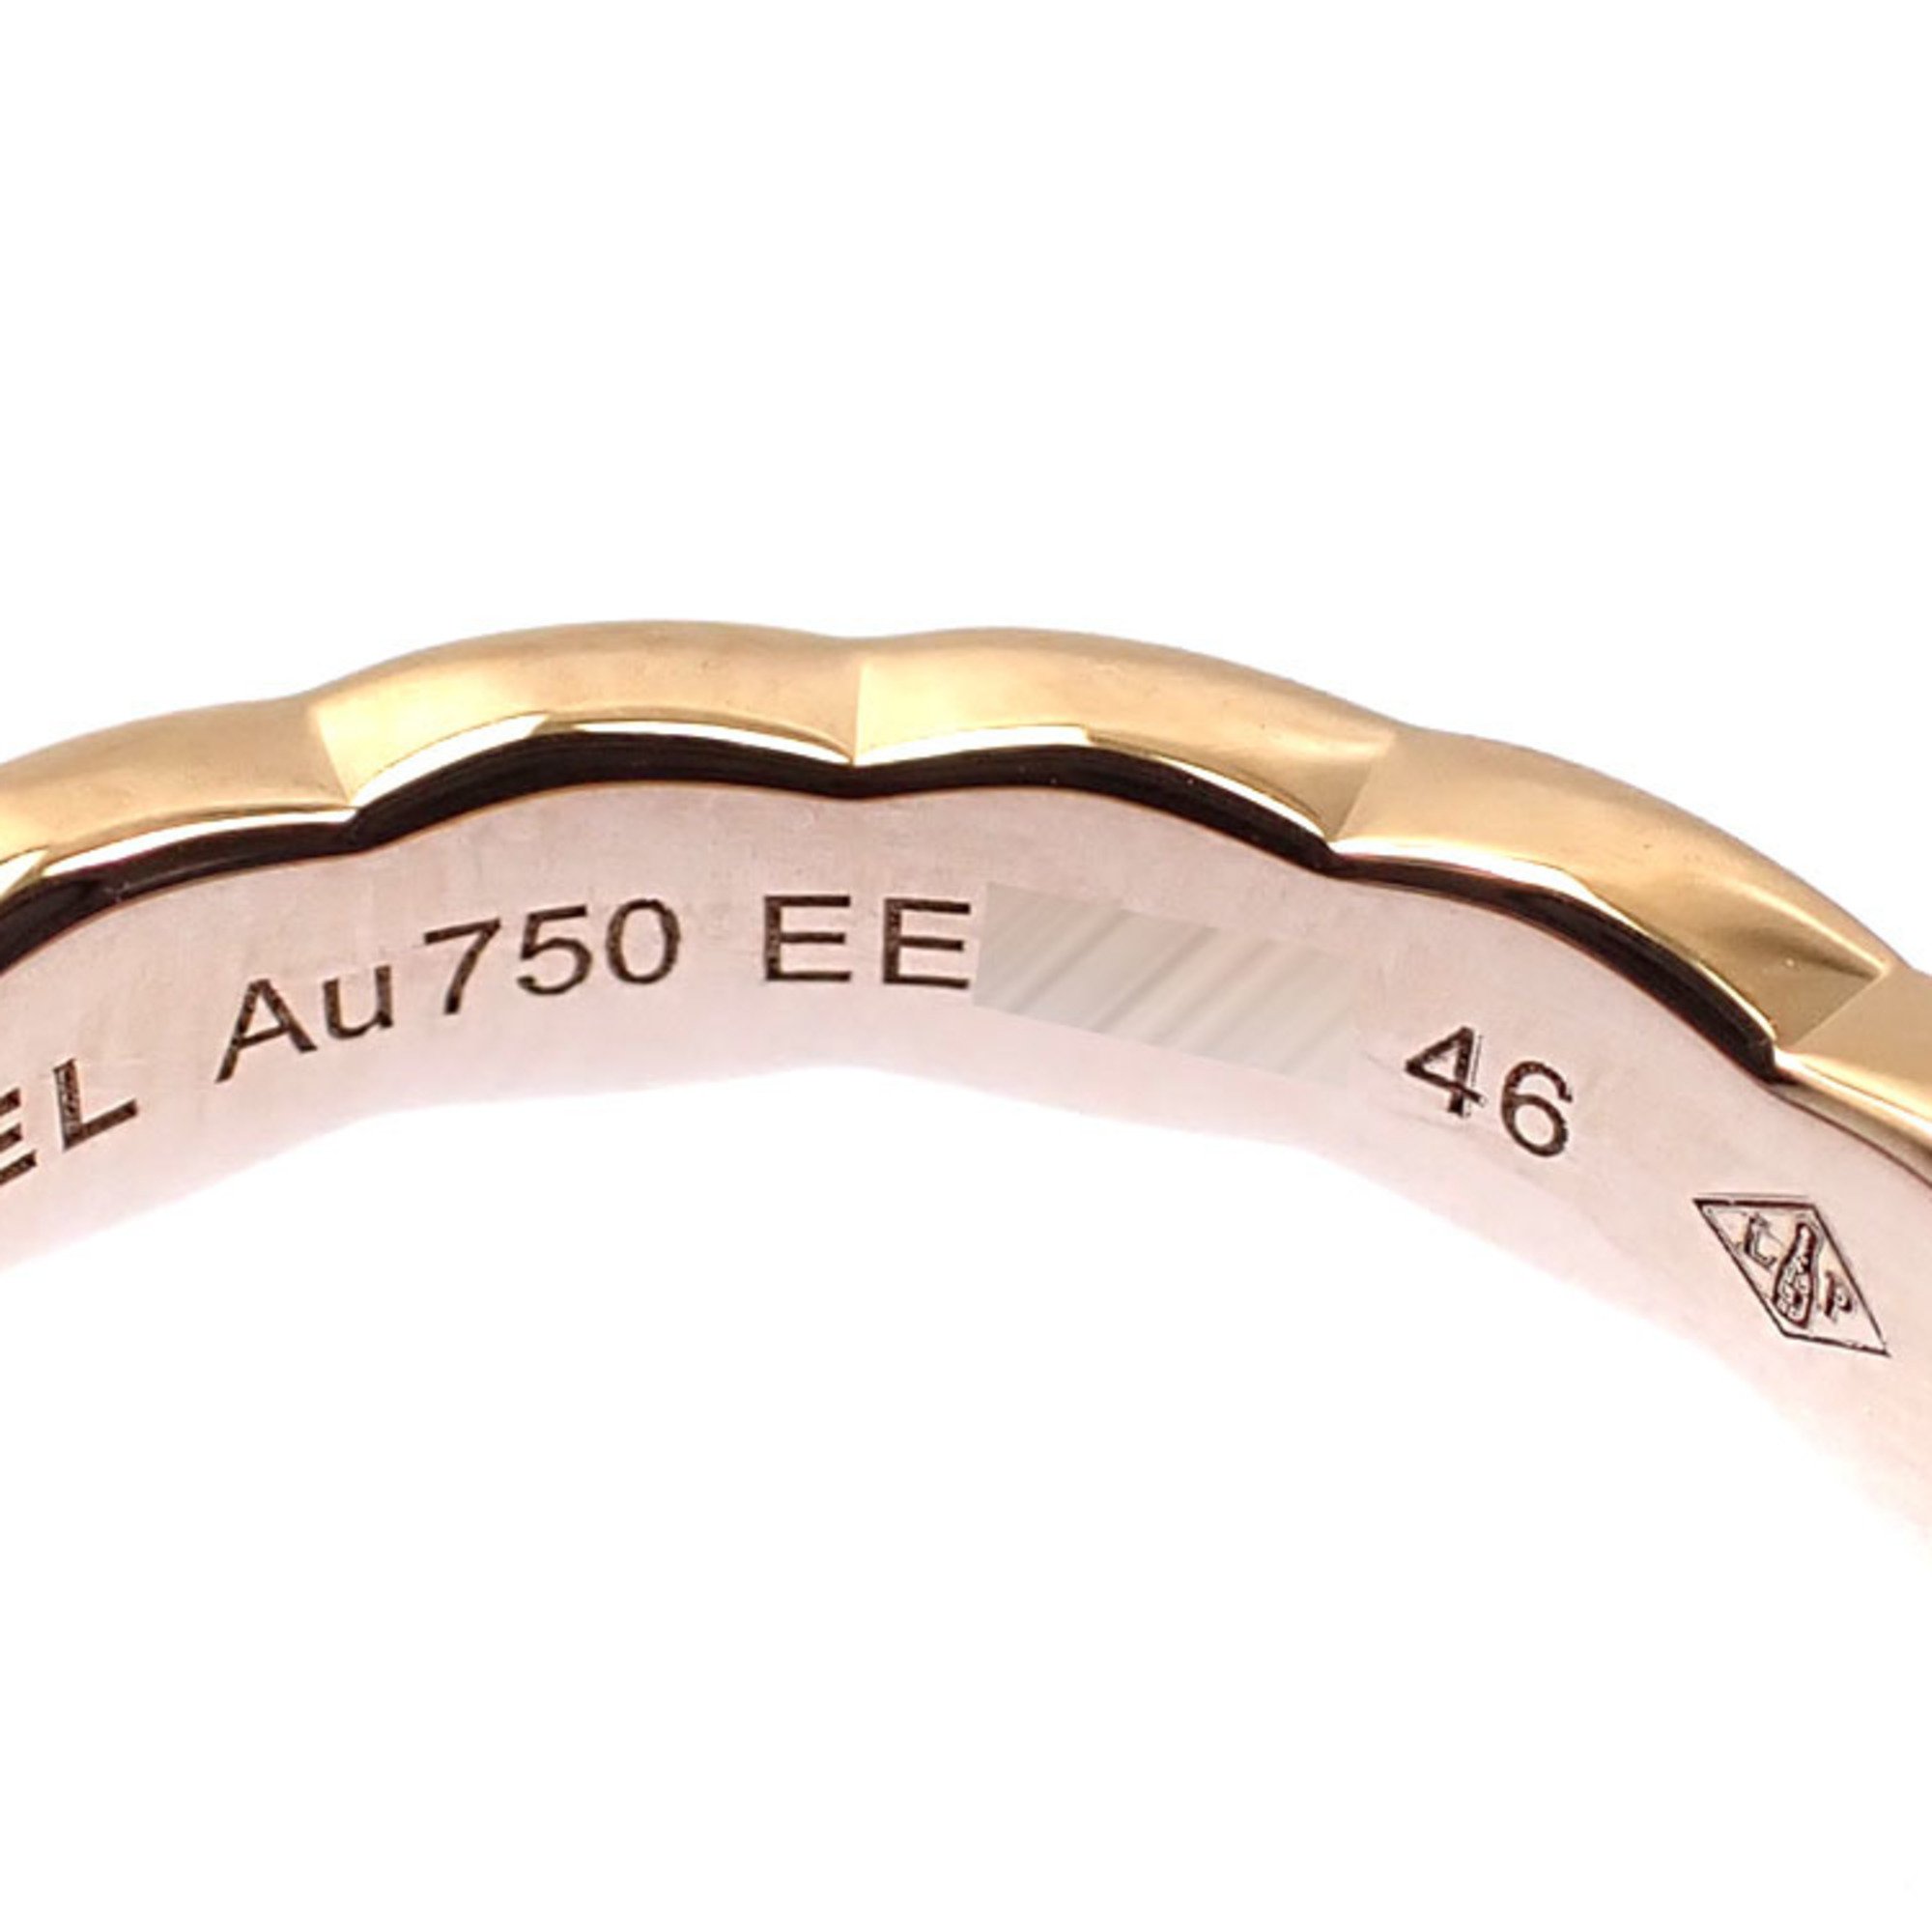 Chanel Coco Crush Ring for Women Diamond K18BG Size 5.5 #46 3.0g J11786 750 18K Beige Gold